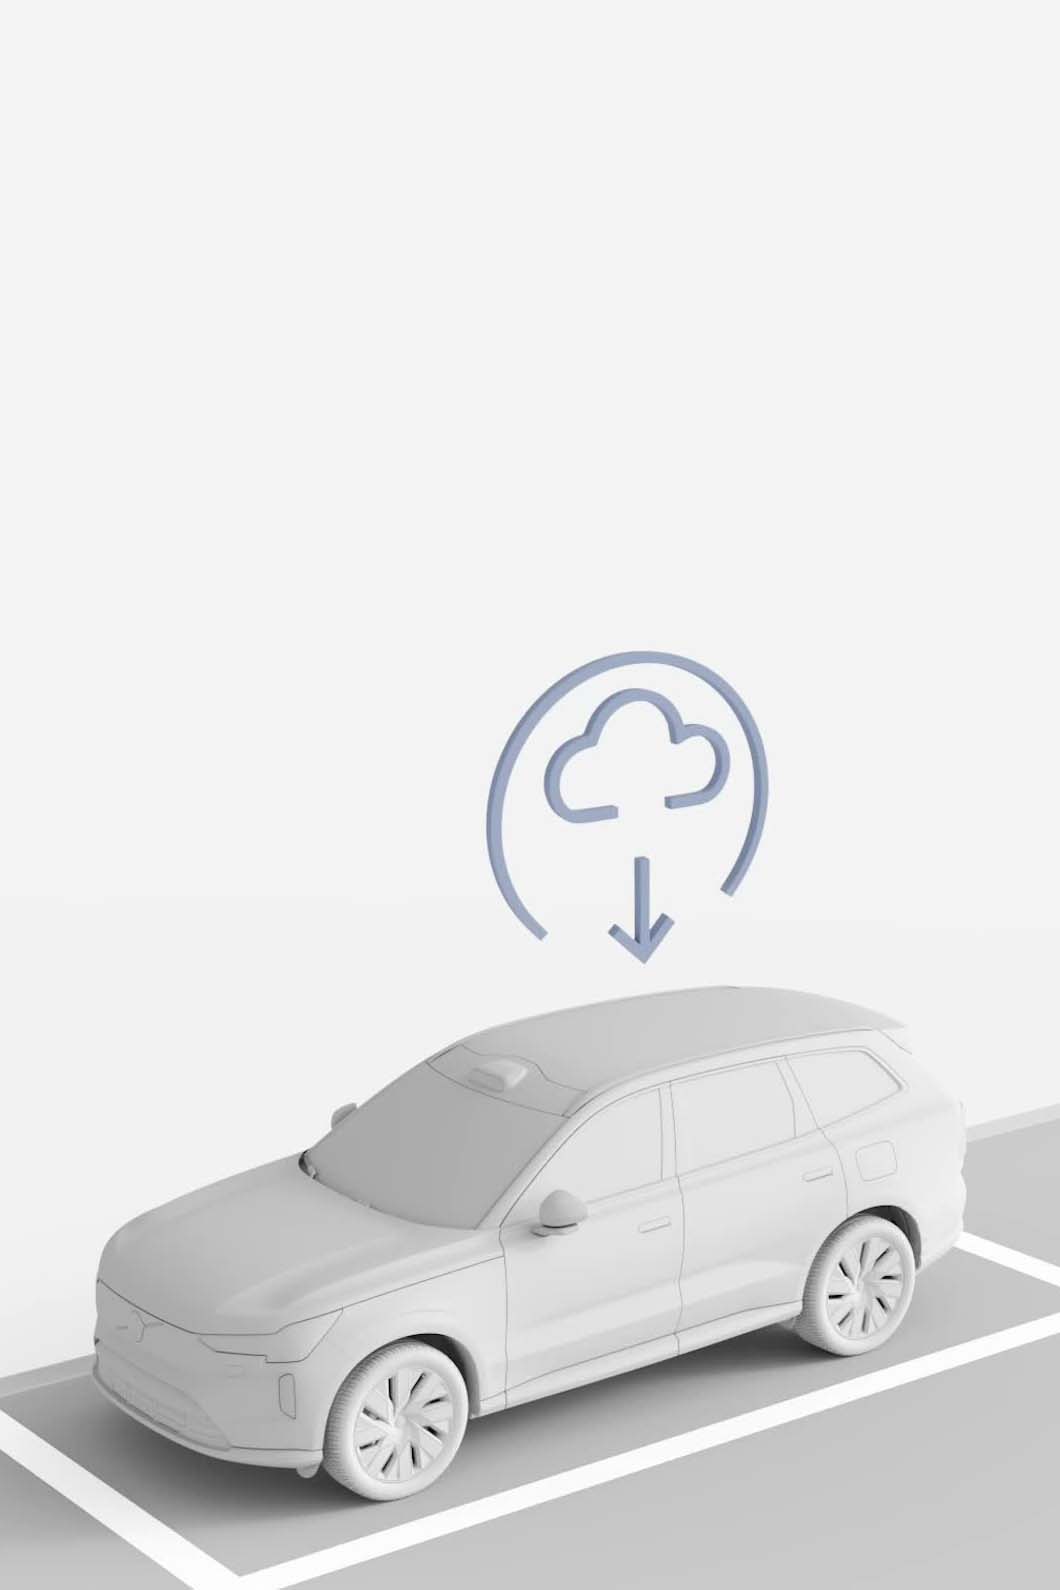 Ilustración de un vehículo Volvo que recibe una actualización de software desde la nube.